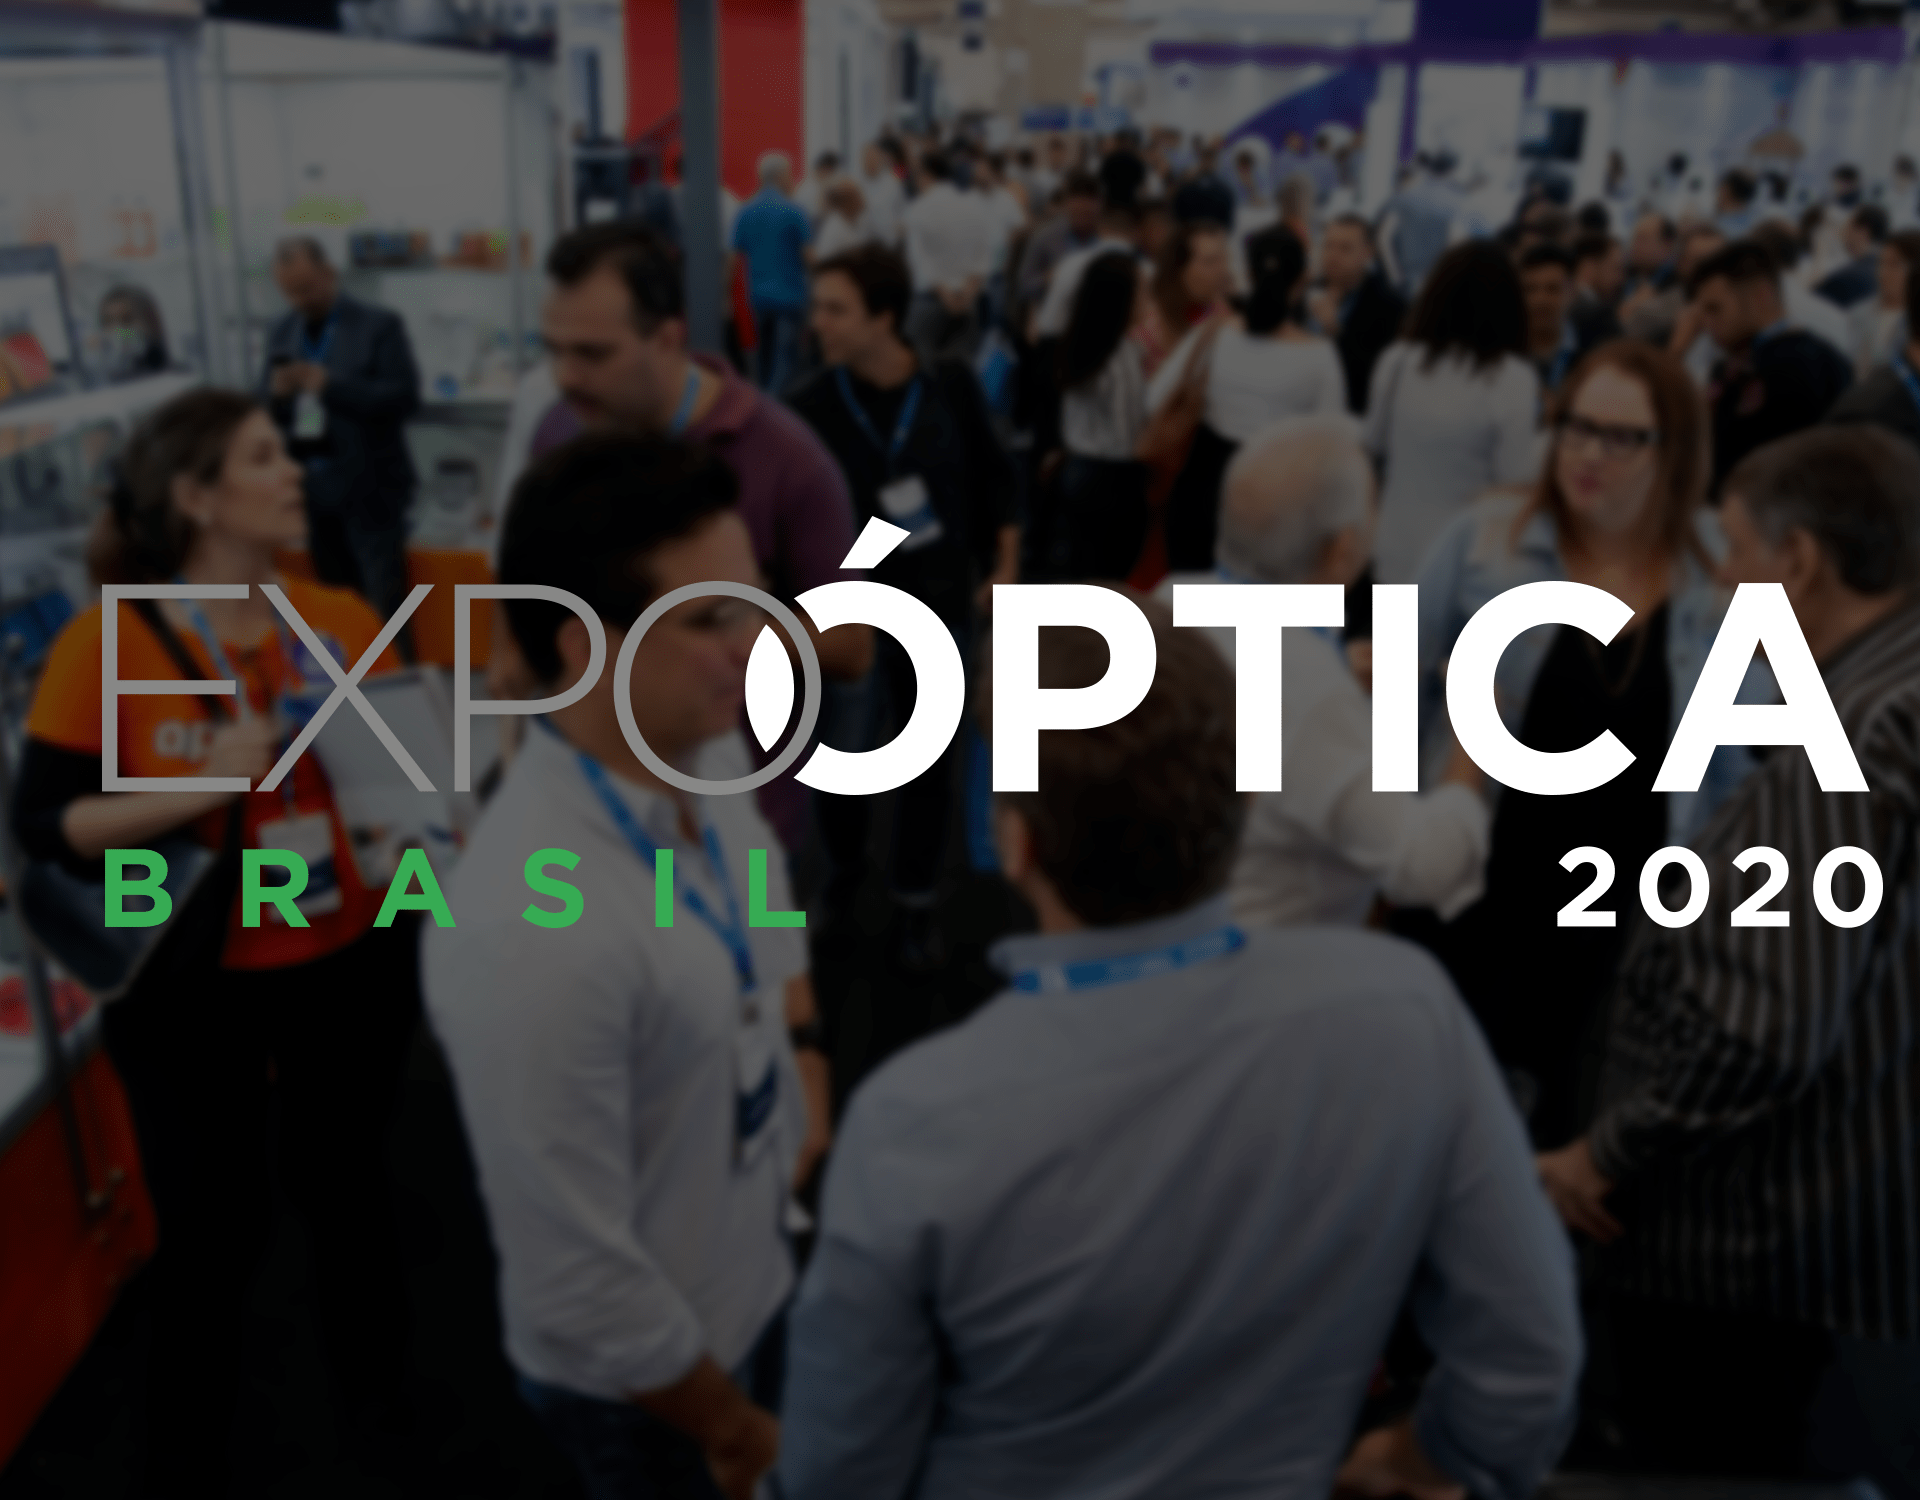 Expo Óptica 20 20 Deve Gerar Mais De R$ 500 Milhões Em Negócios